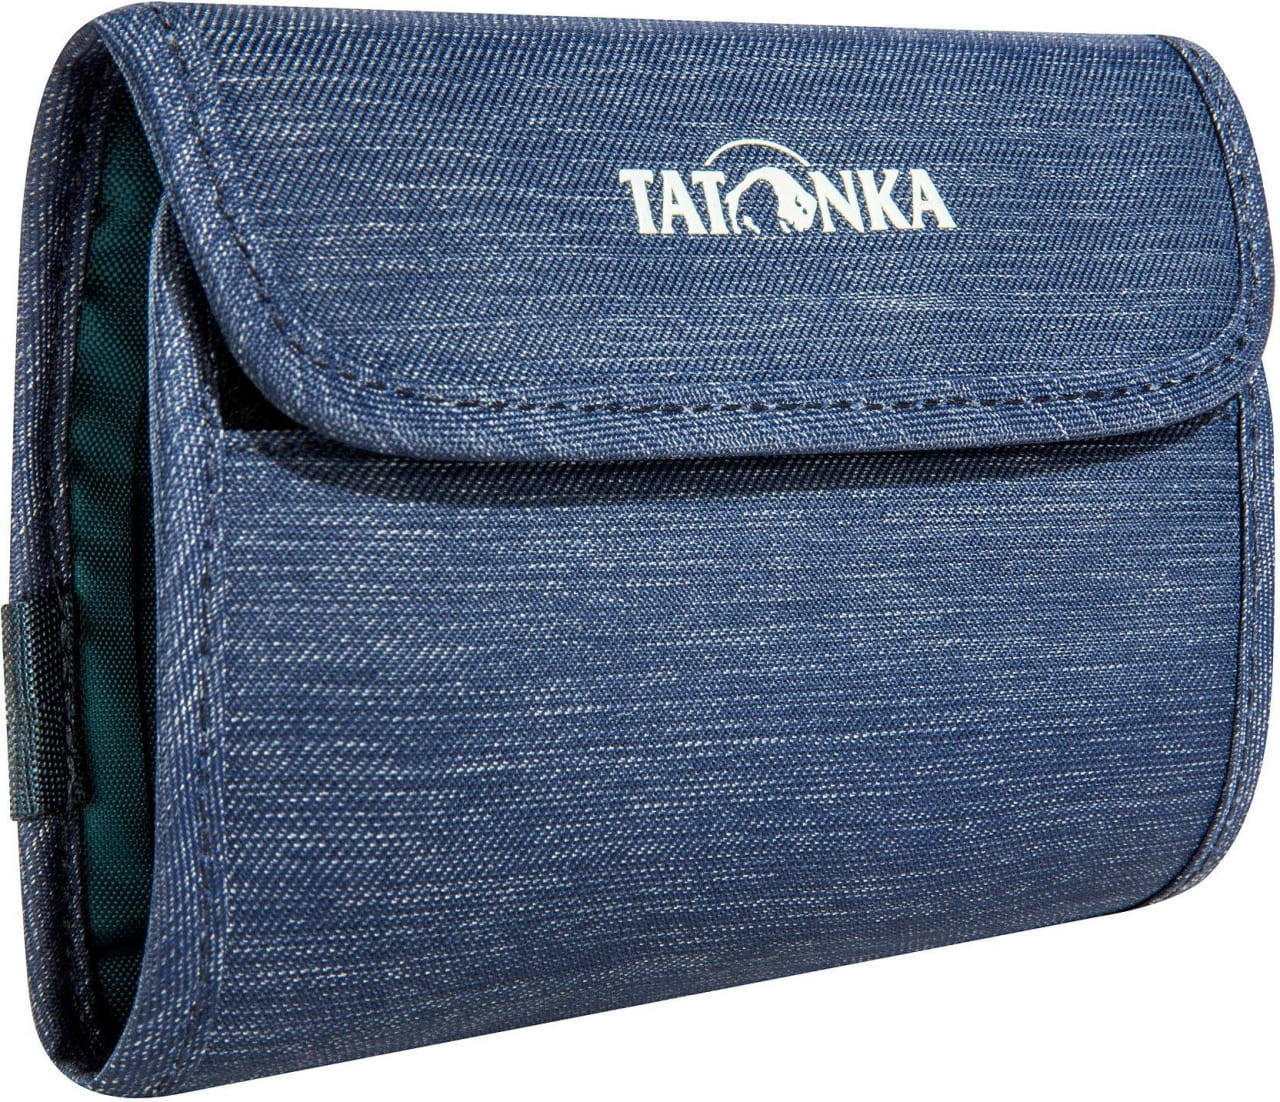 Portemonnaie für draußen  Tatonka Euro Wallet